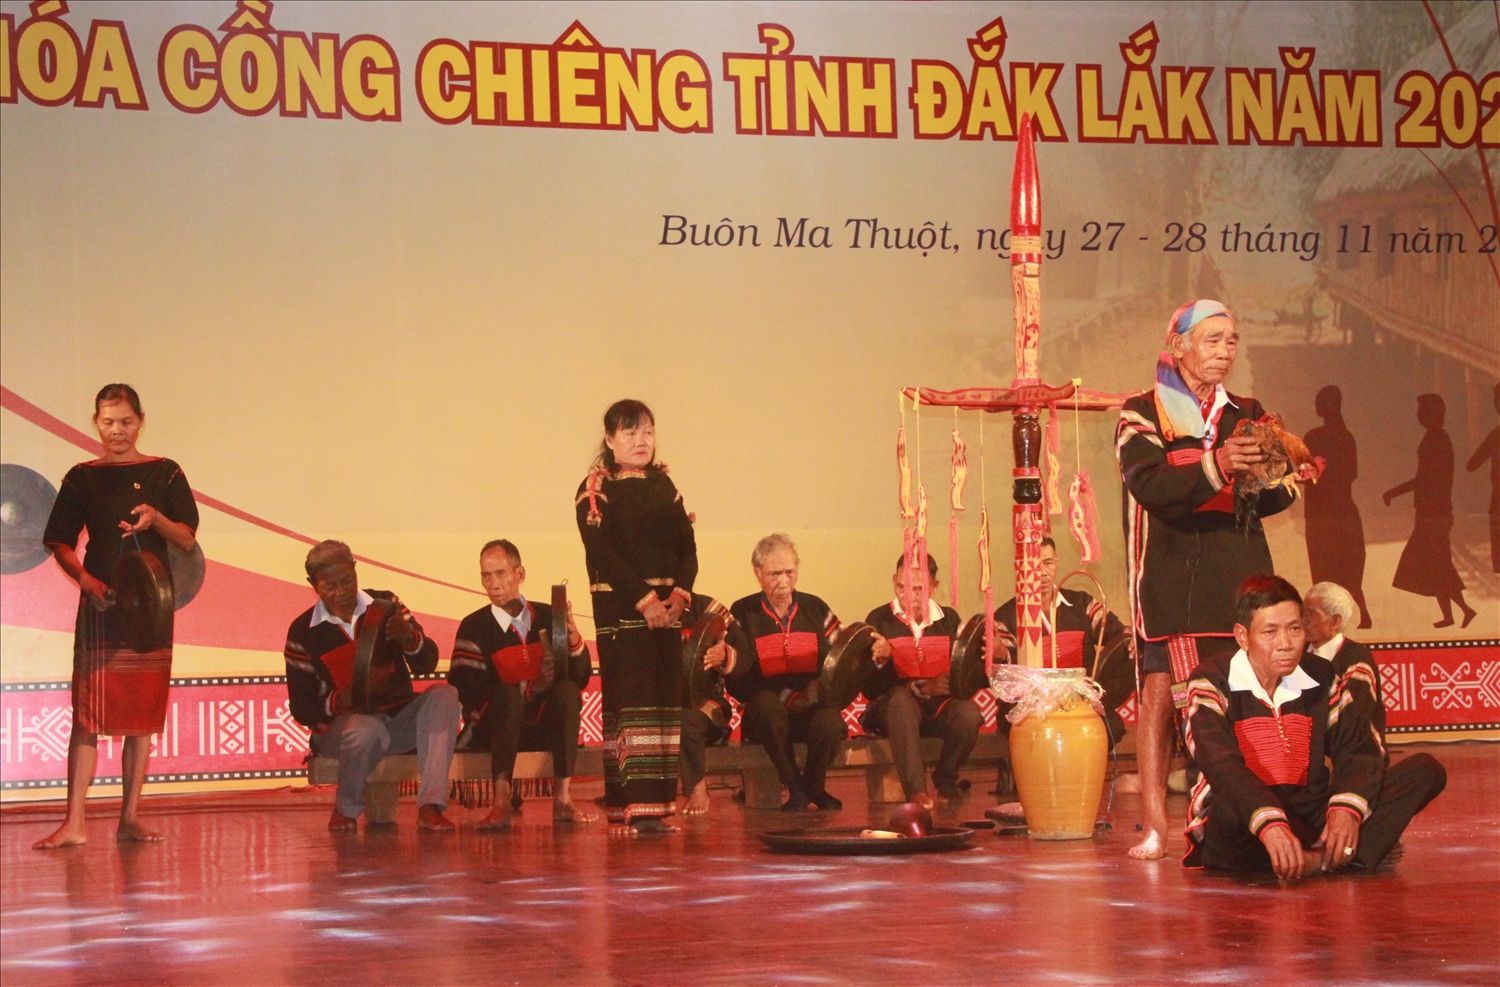 Phục dựng Lễ cúng sức khỏe của người Ê Đê tại Liên hoan văn hóa cồng chiêng tỉnh Đắk Lắk